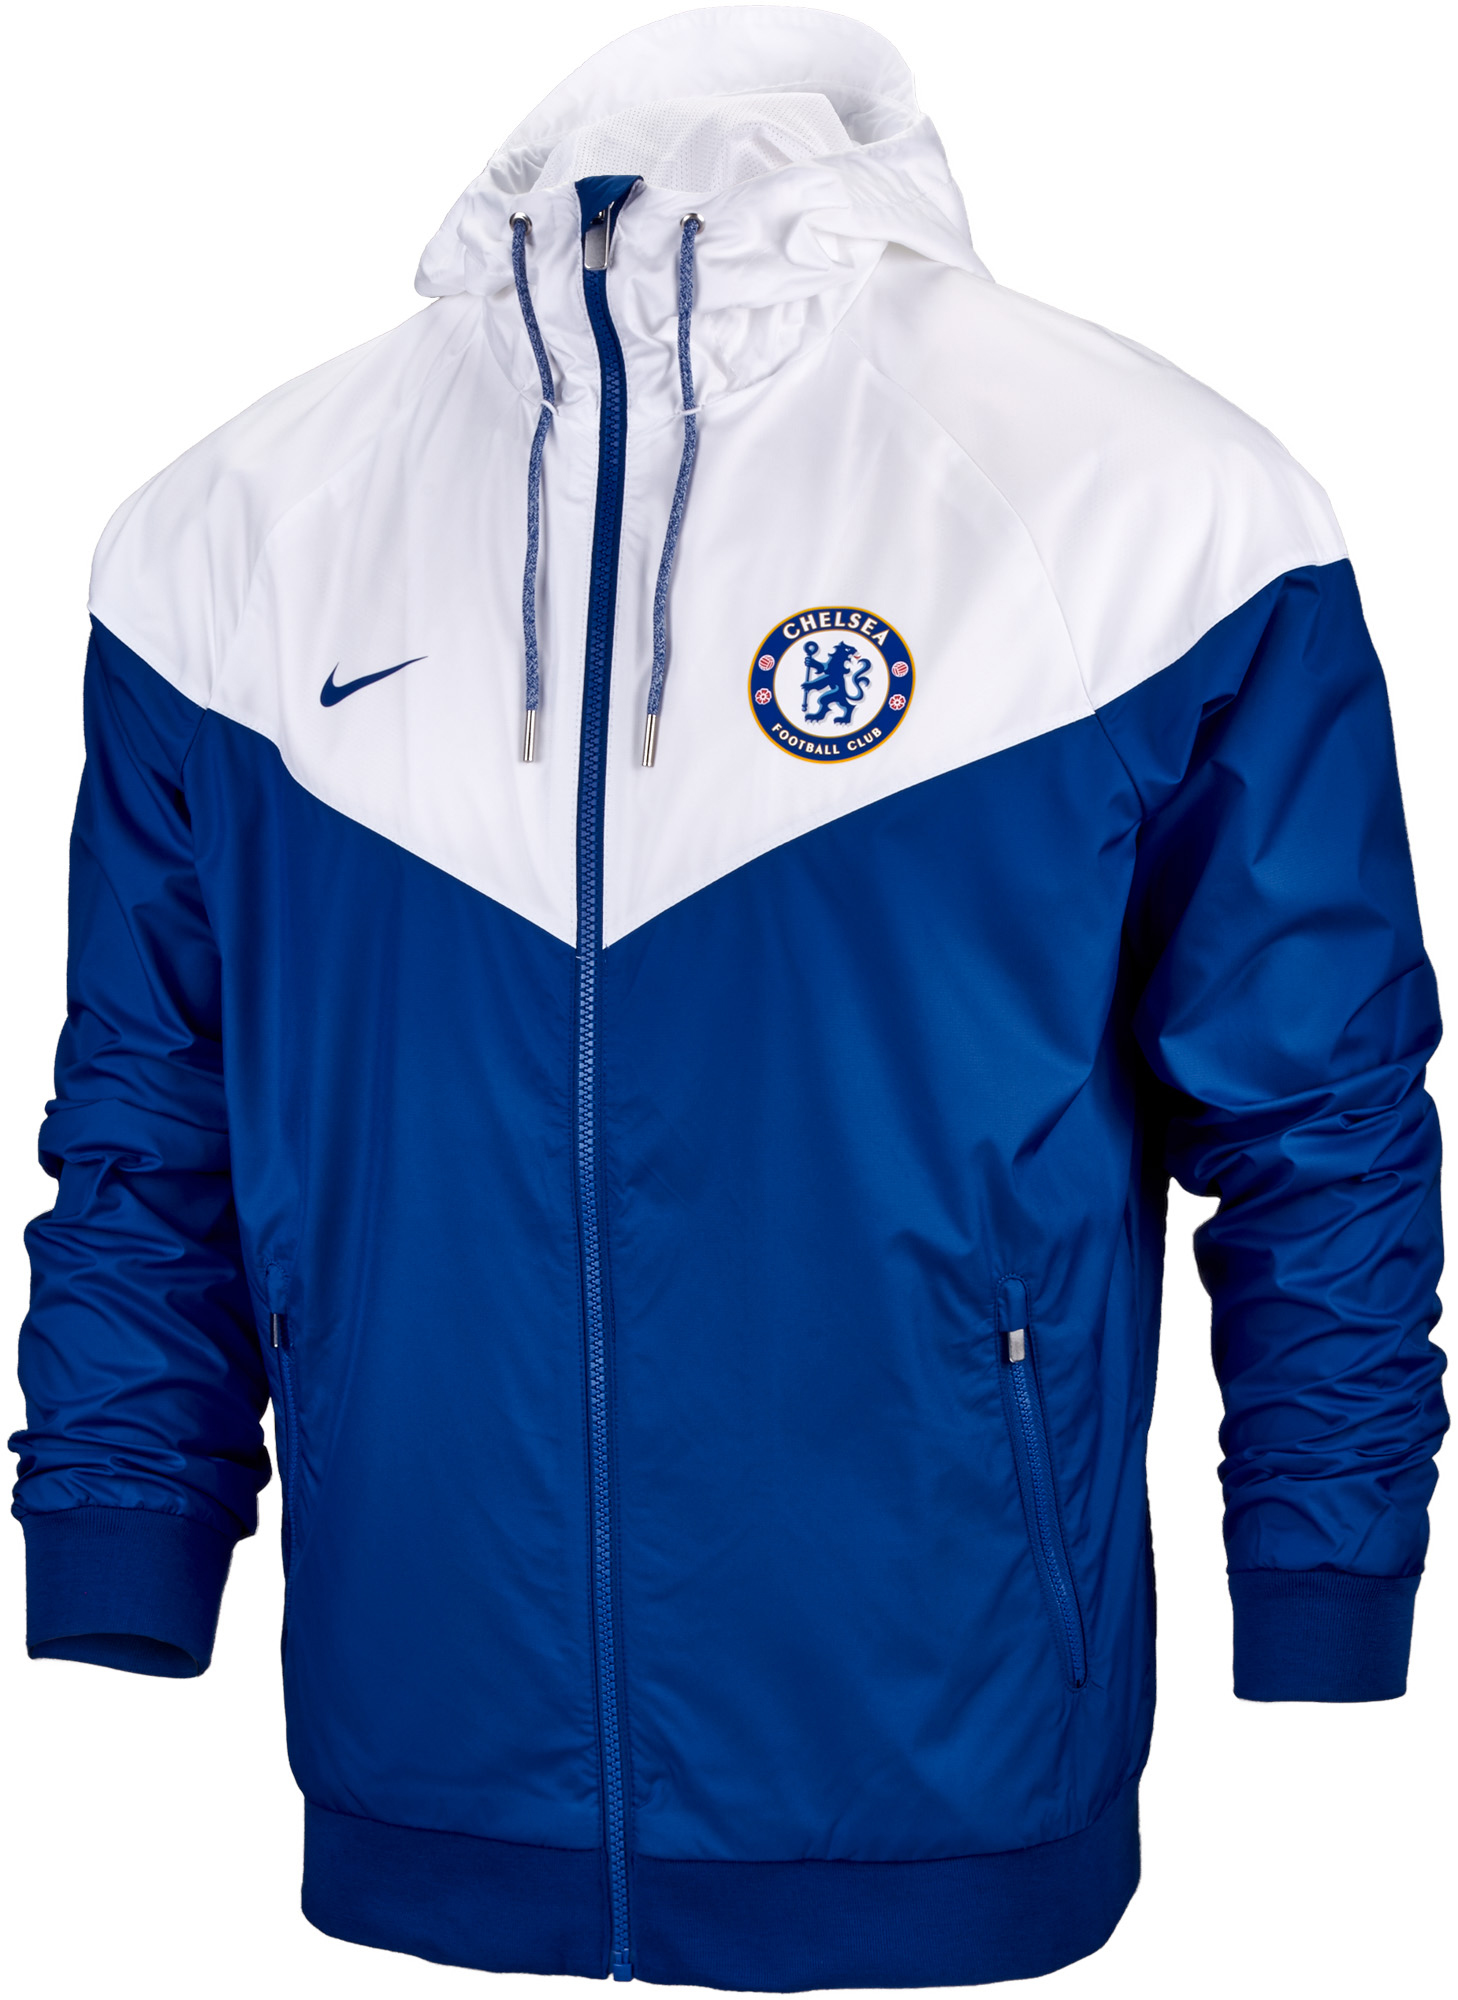 nike blue and white jacket